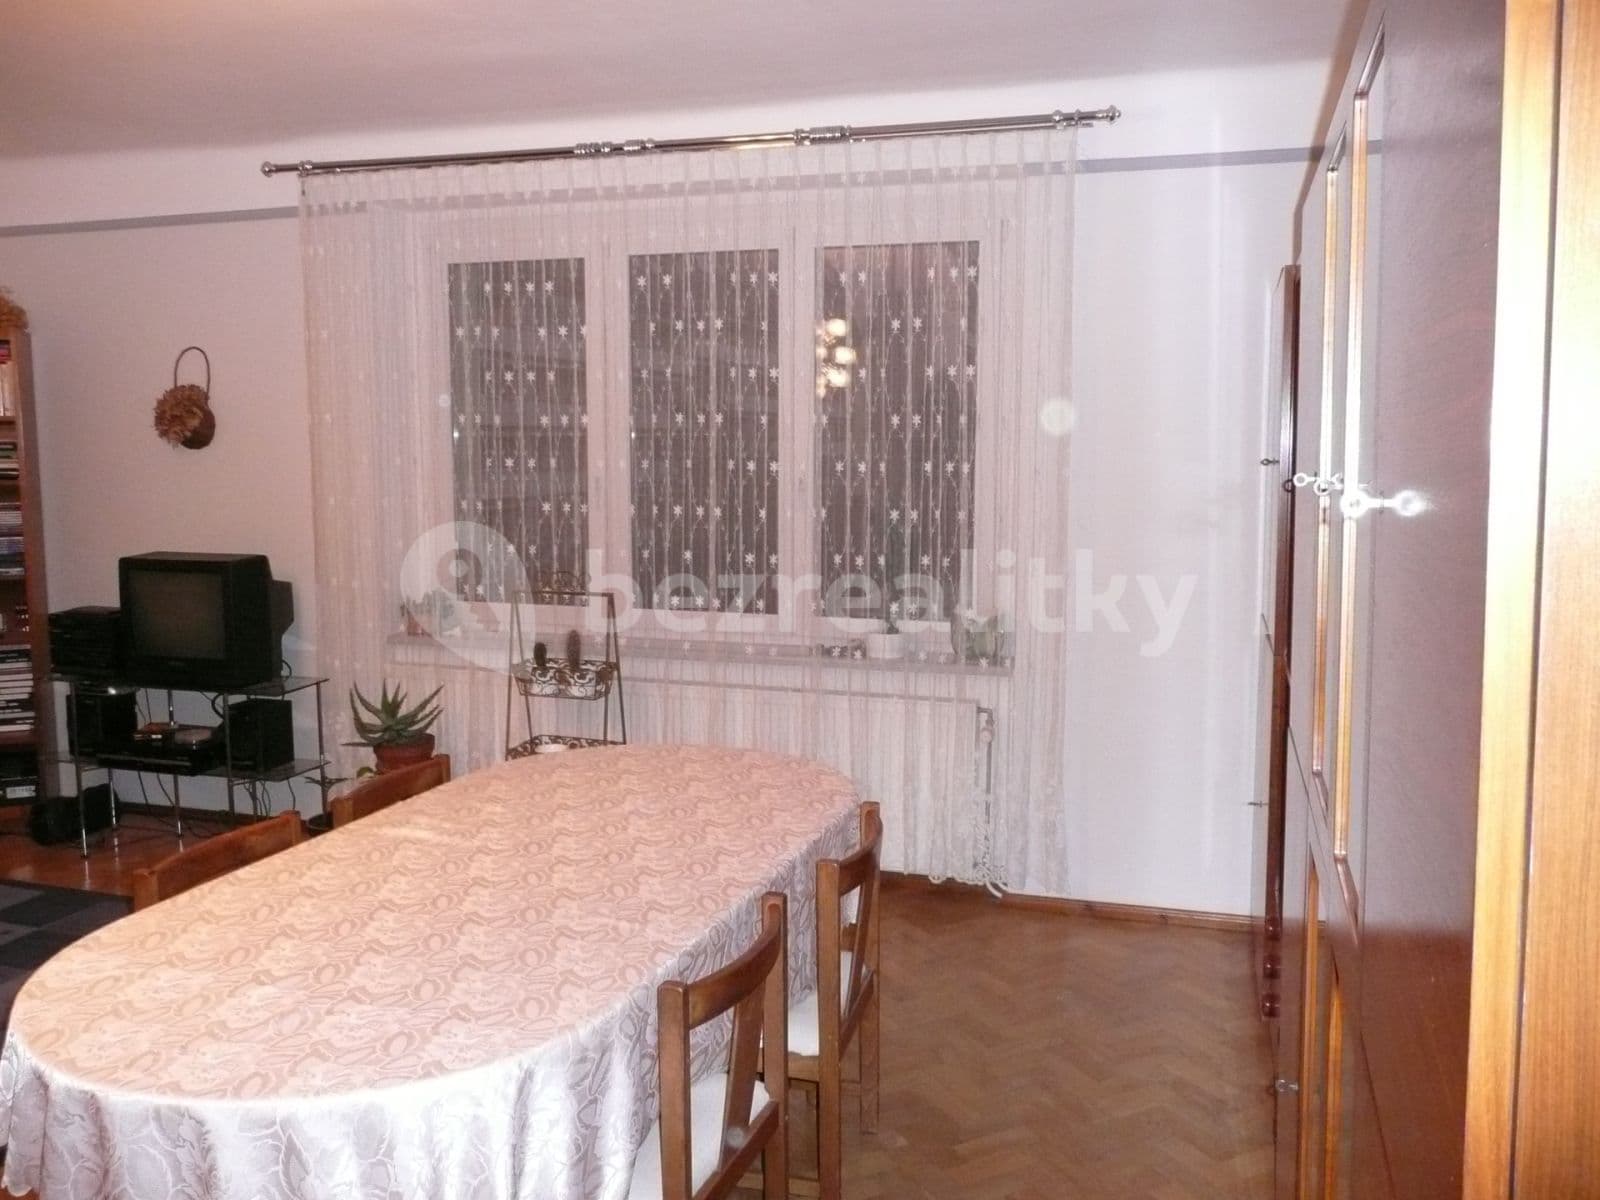 3 bedroom flat for sale, 92 m², Hartigova, Prague, Prague